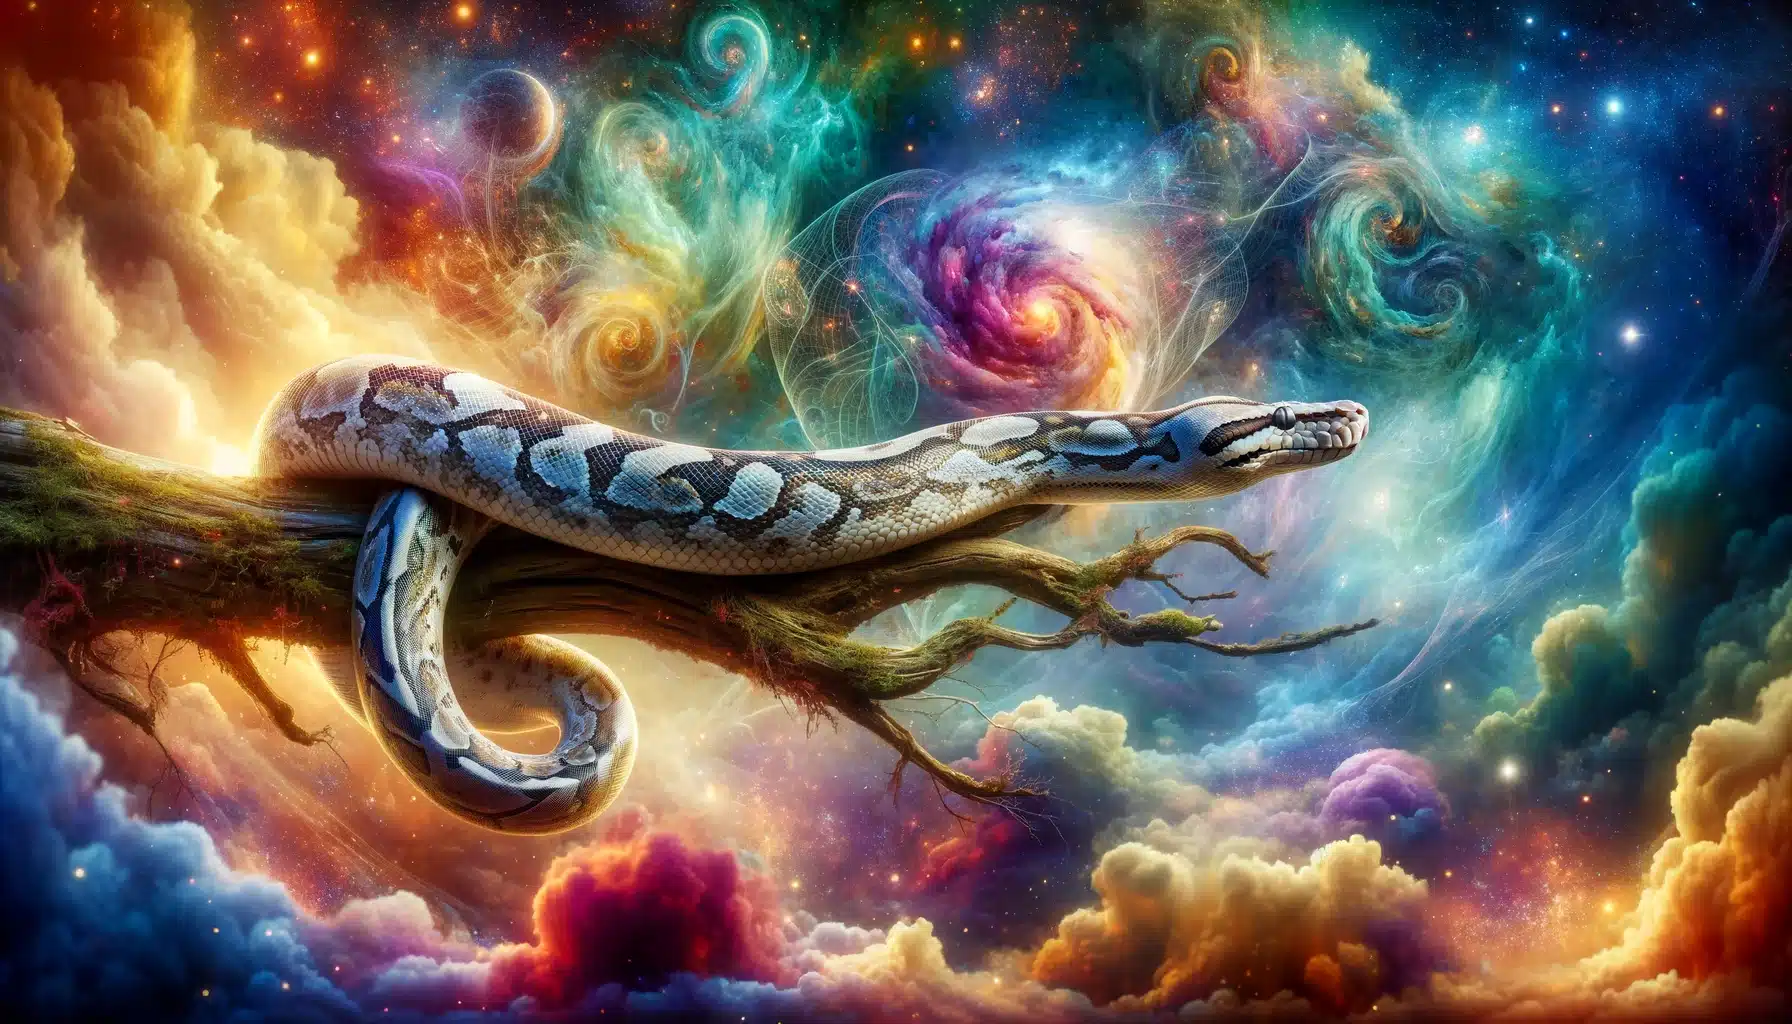 Traumdeutung: Traum mit einer Python oder Boa